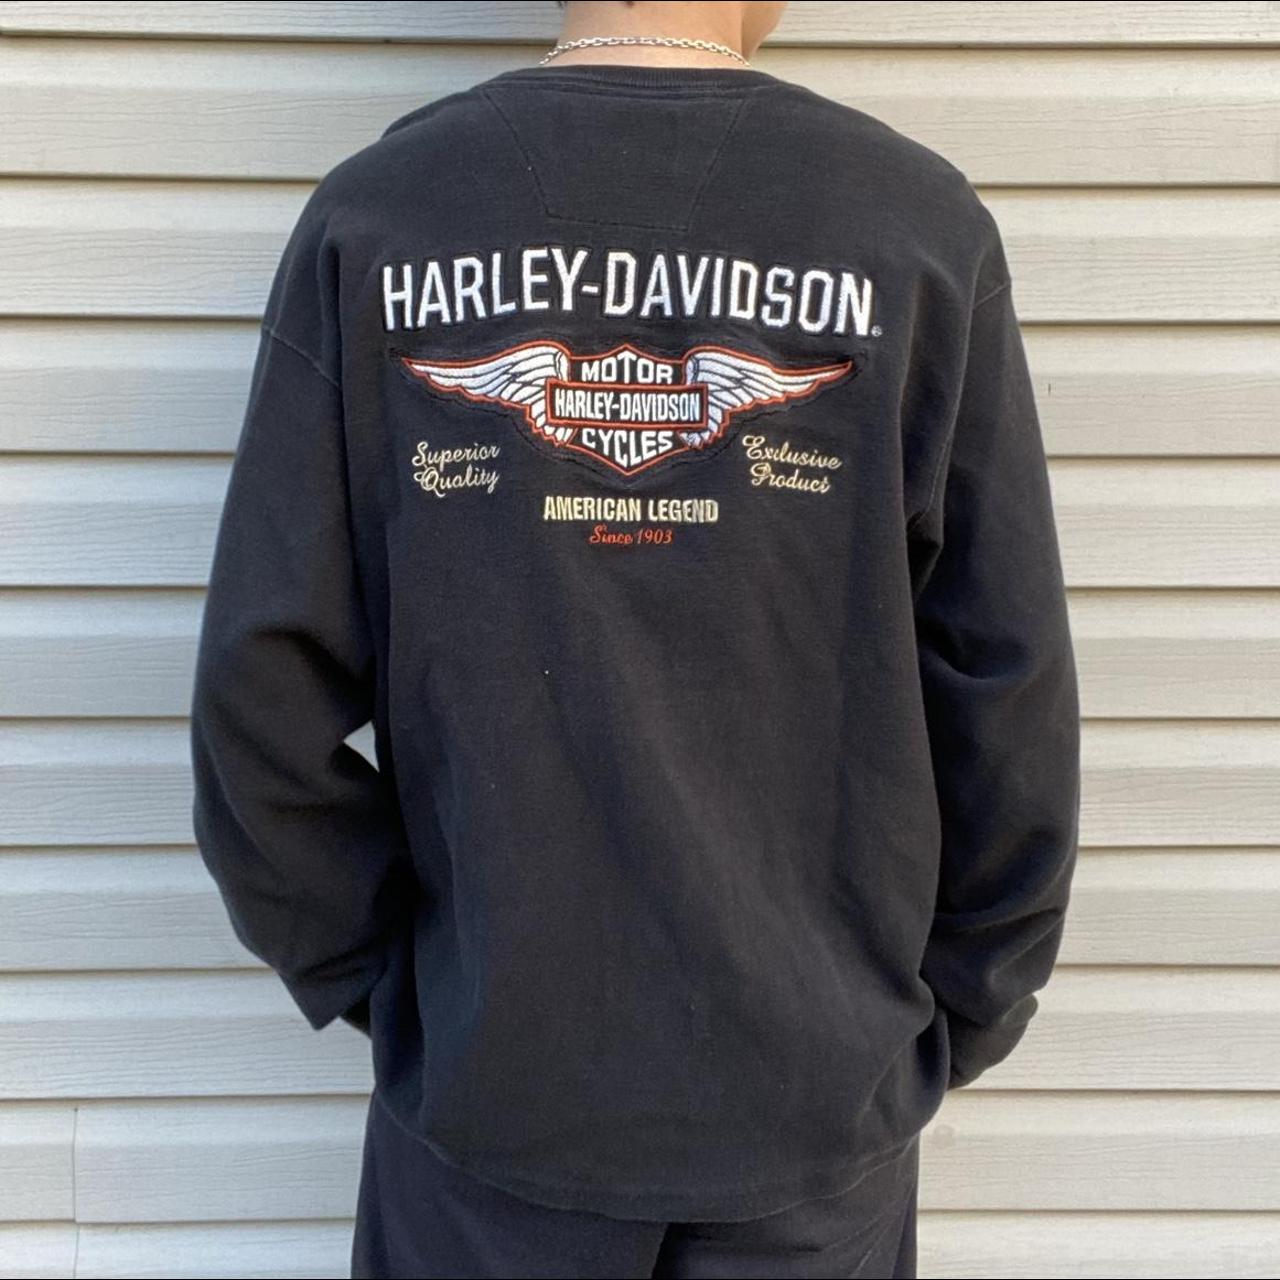 Harley Davidson Men's Black and Orange Jumper (3)